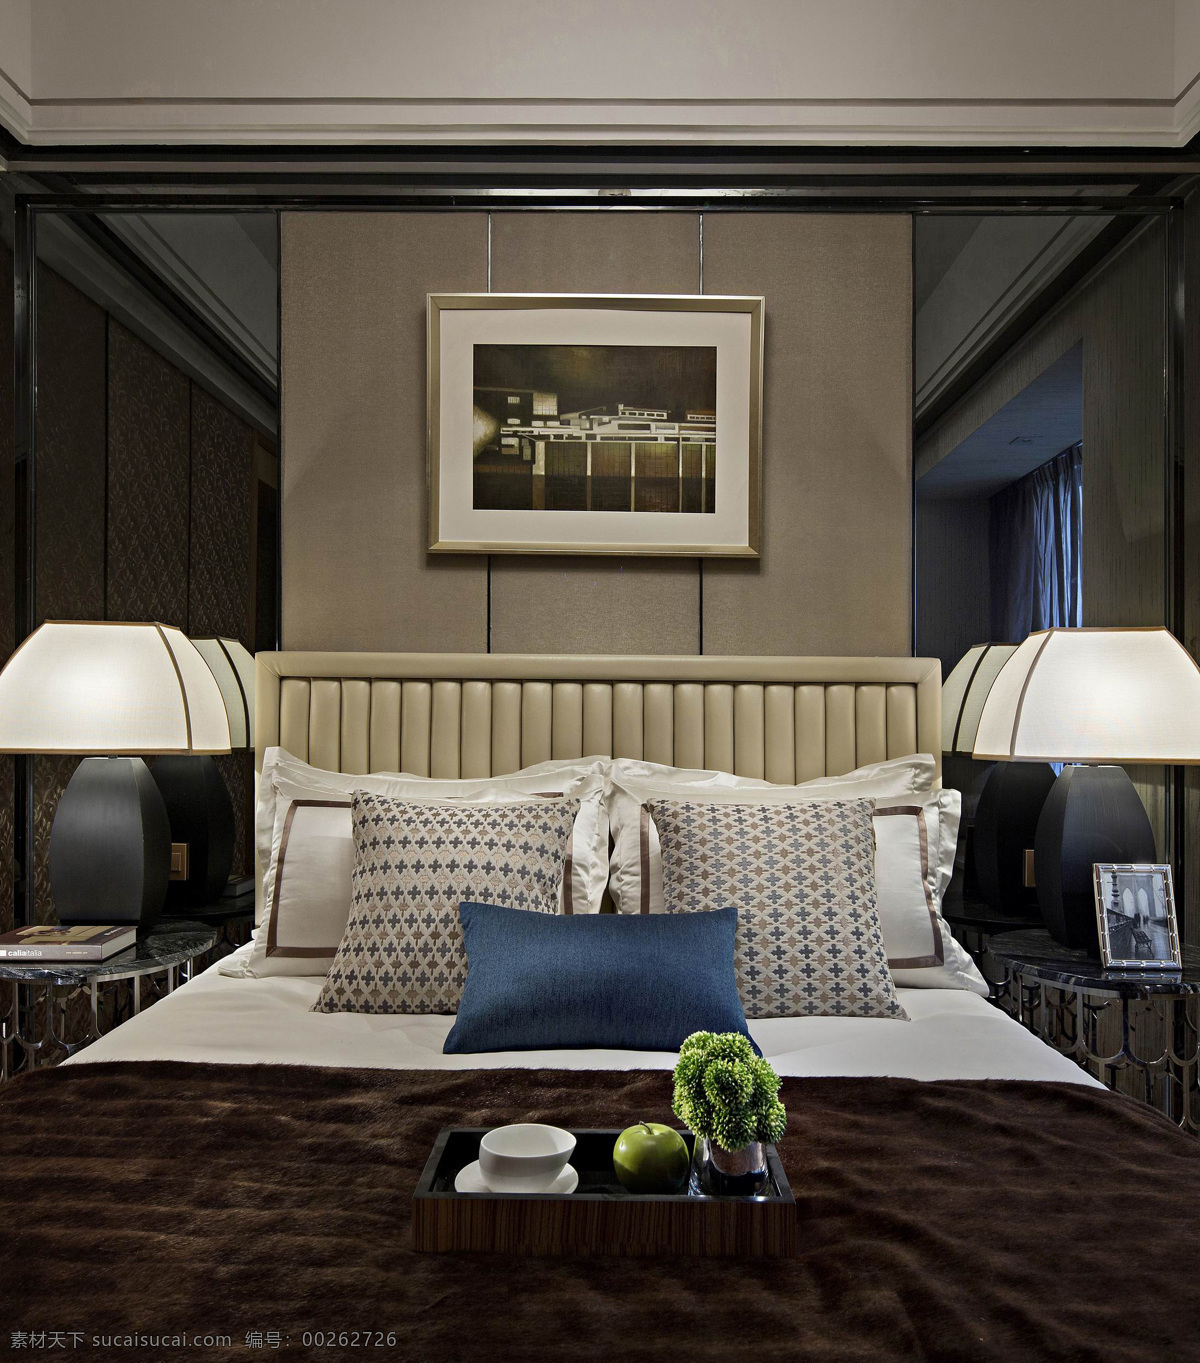 简约 卧室 装修 效果图 高清 家居 客厅 欧式风格 软装 沙发 奢华 温馨 现代 小型客厅